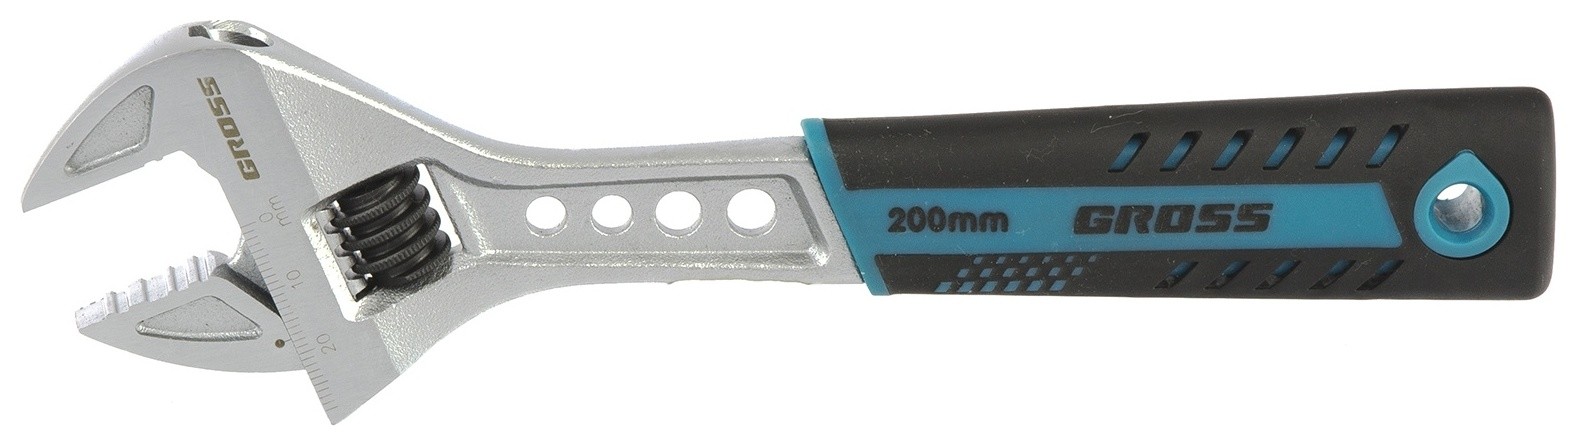 Ключ разводной, 200 мм, Crv, двухкомпонентная ручка